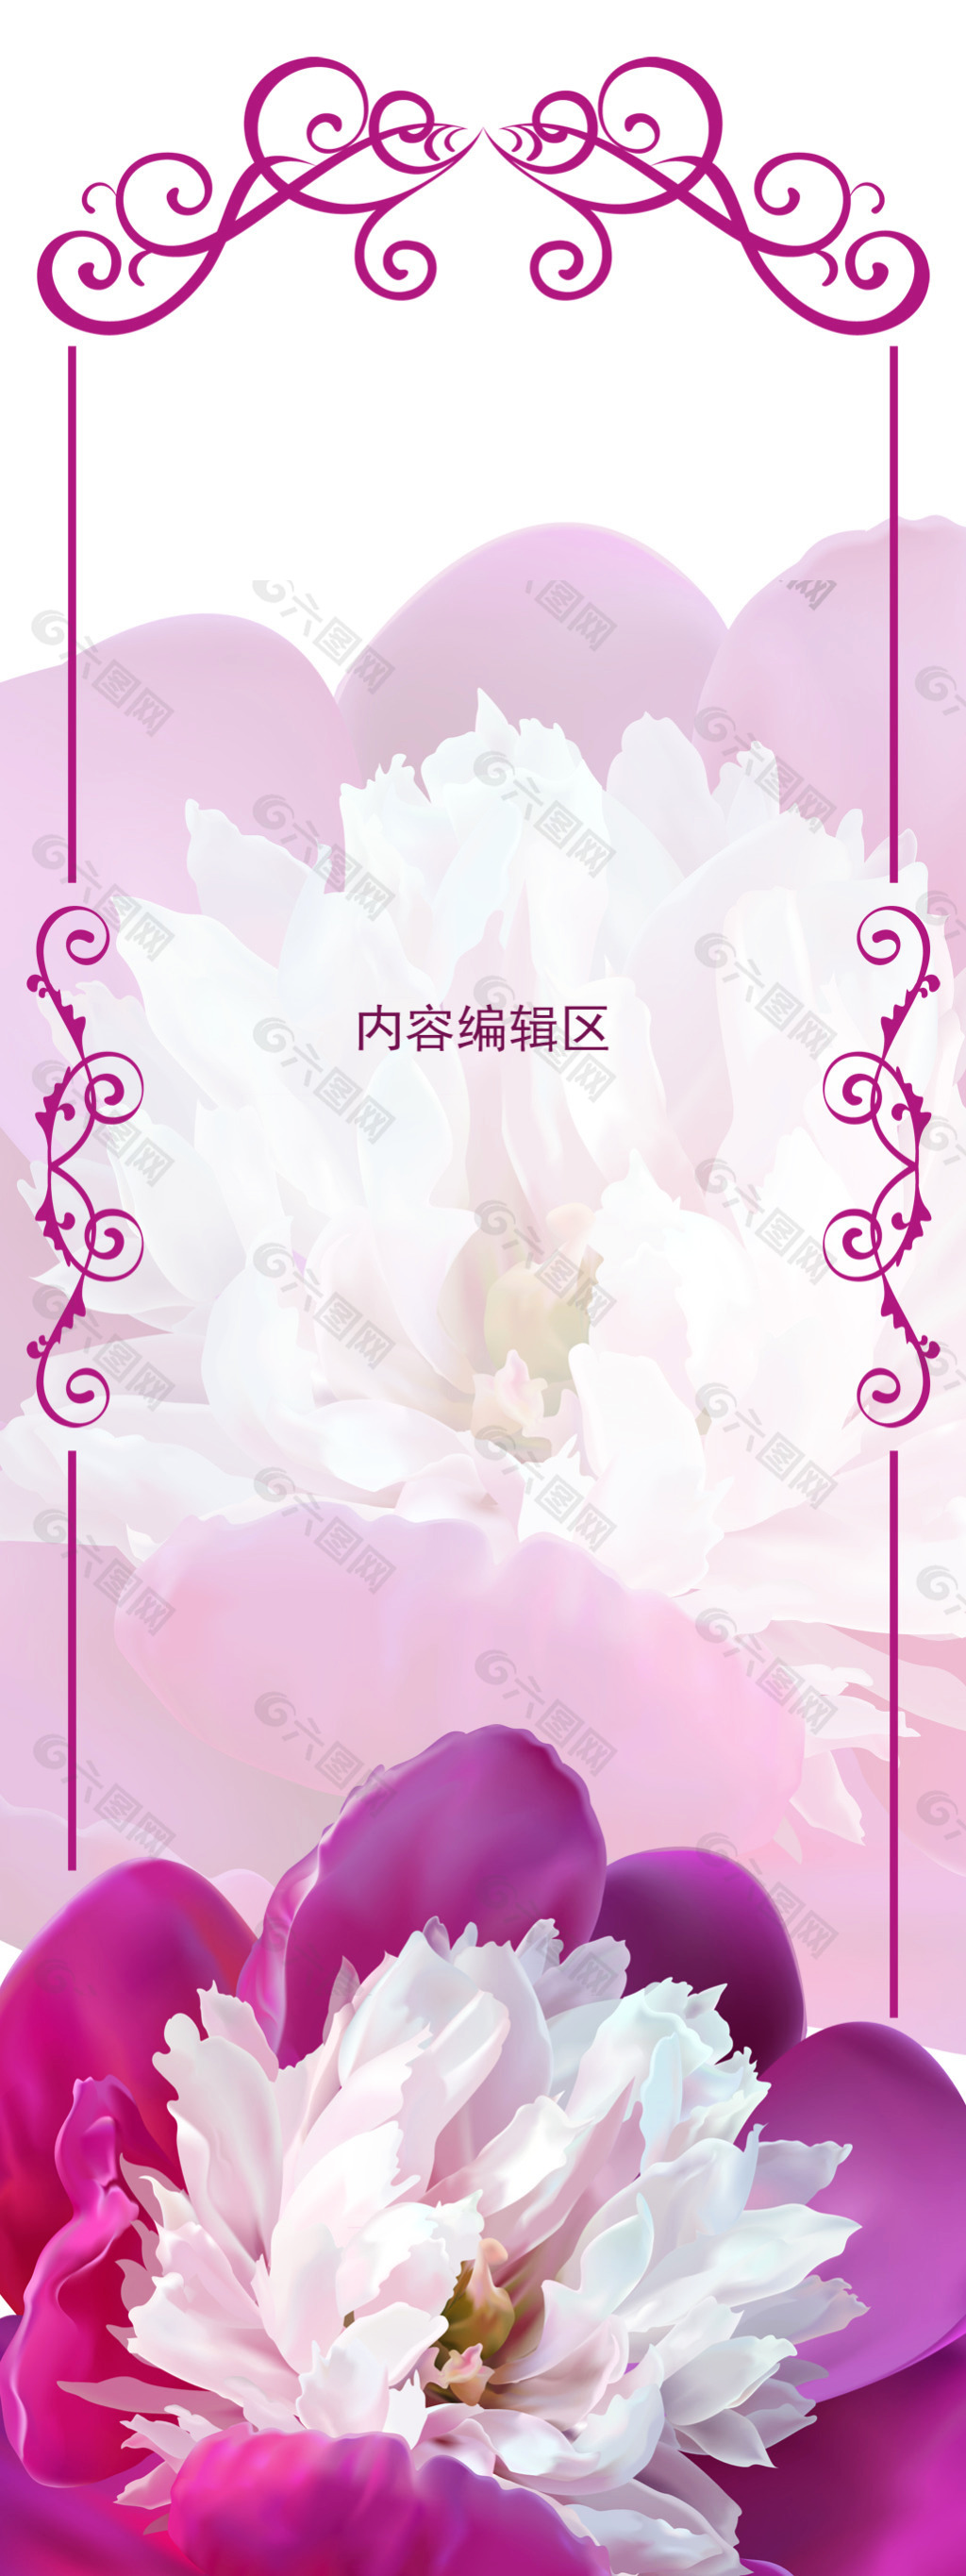 精美紫色牡丹展架海报设计画面素材